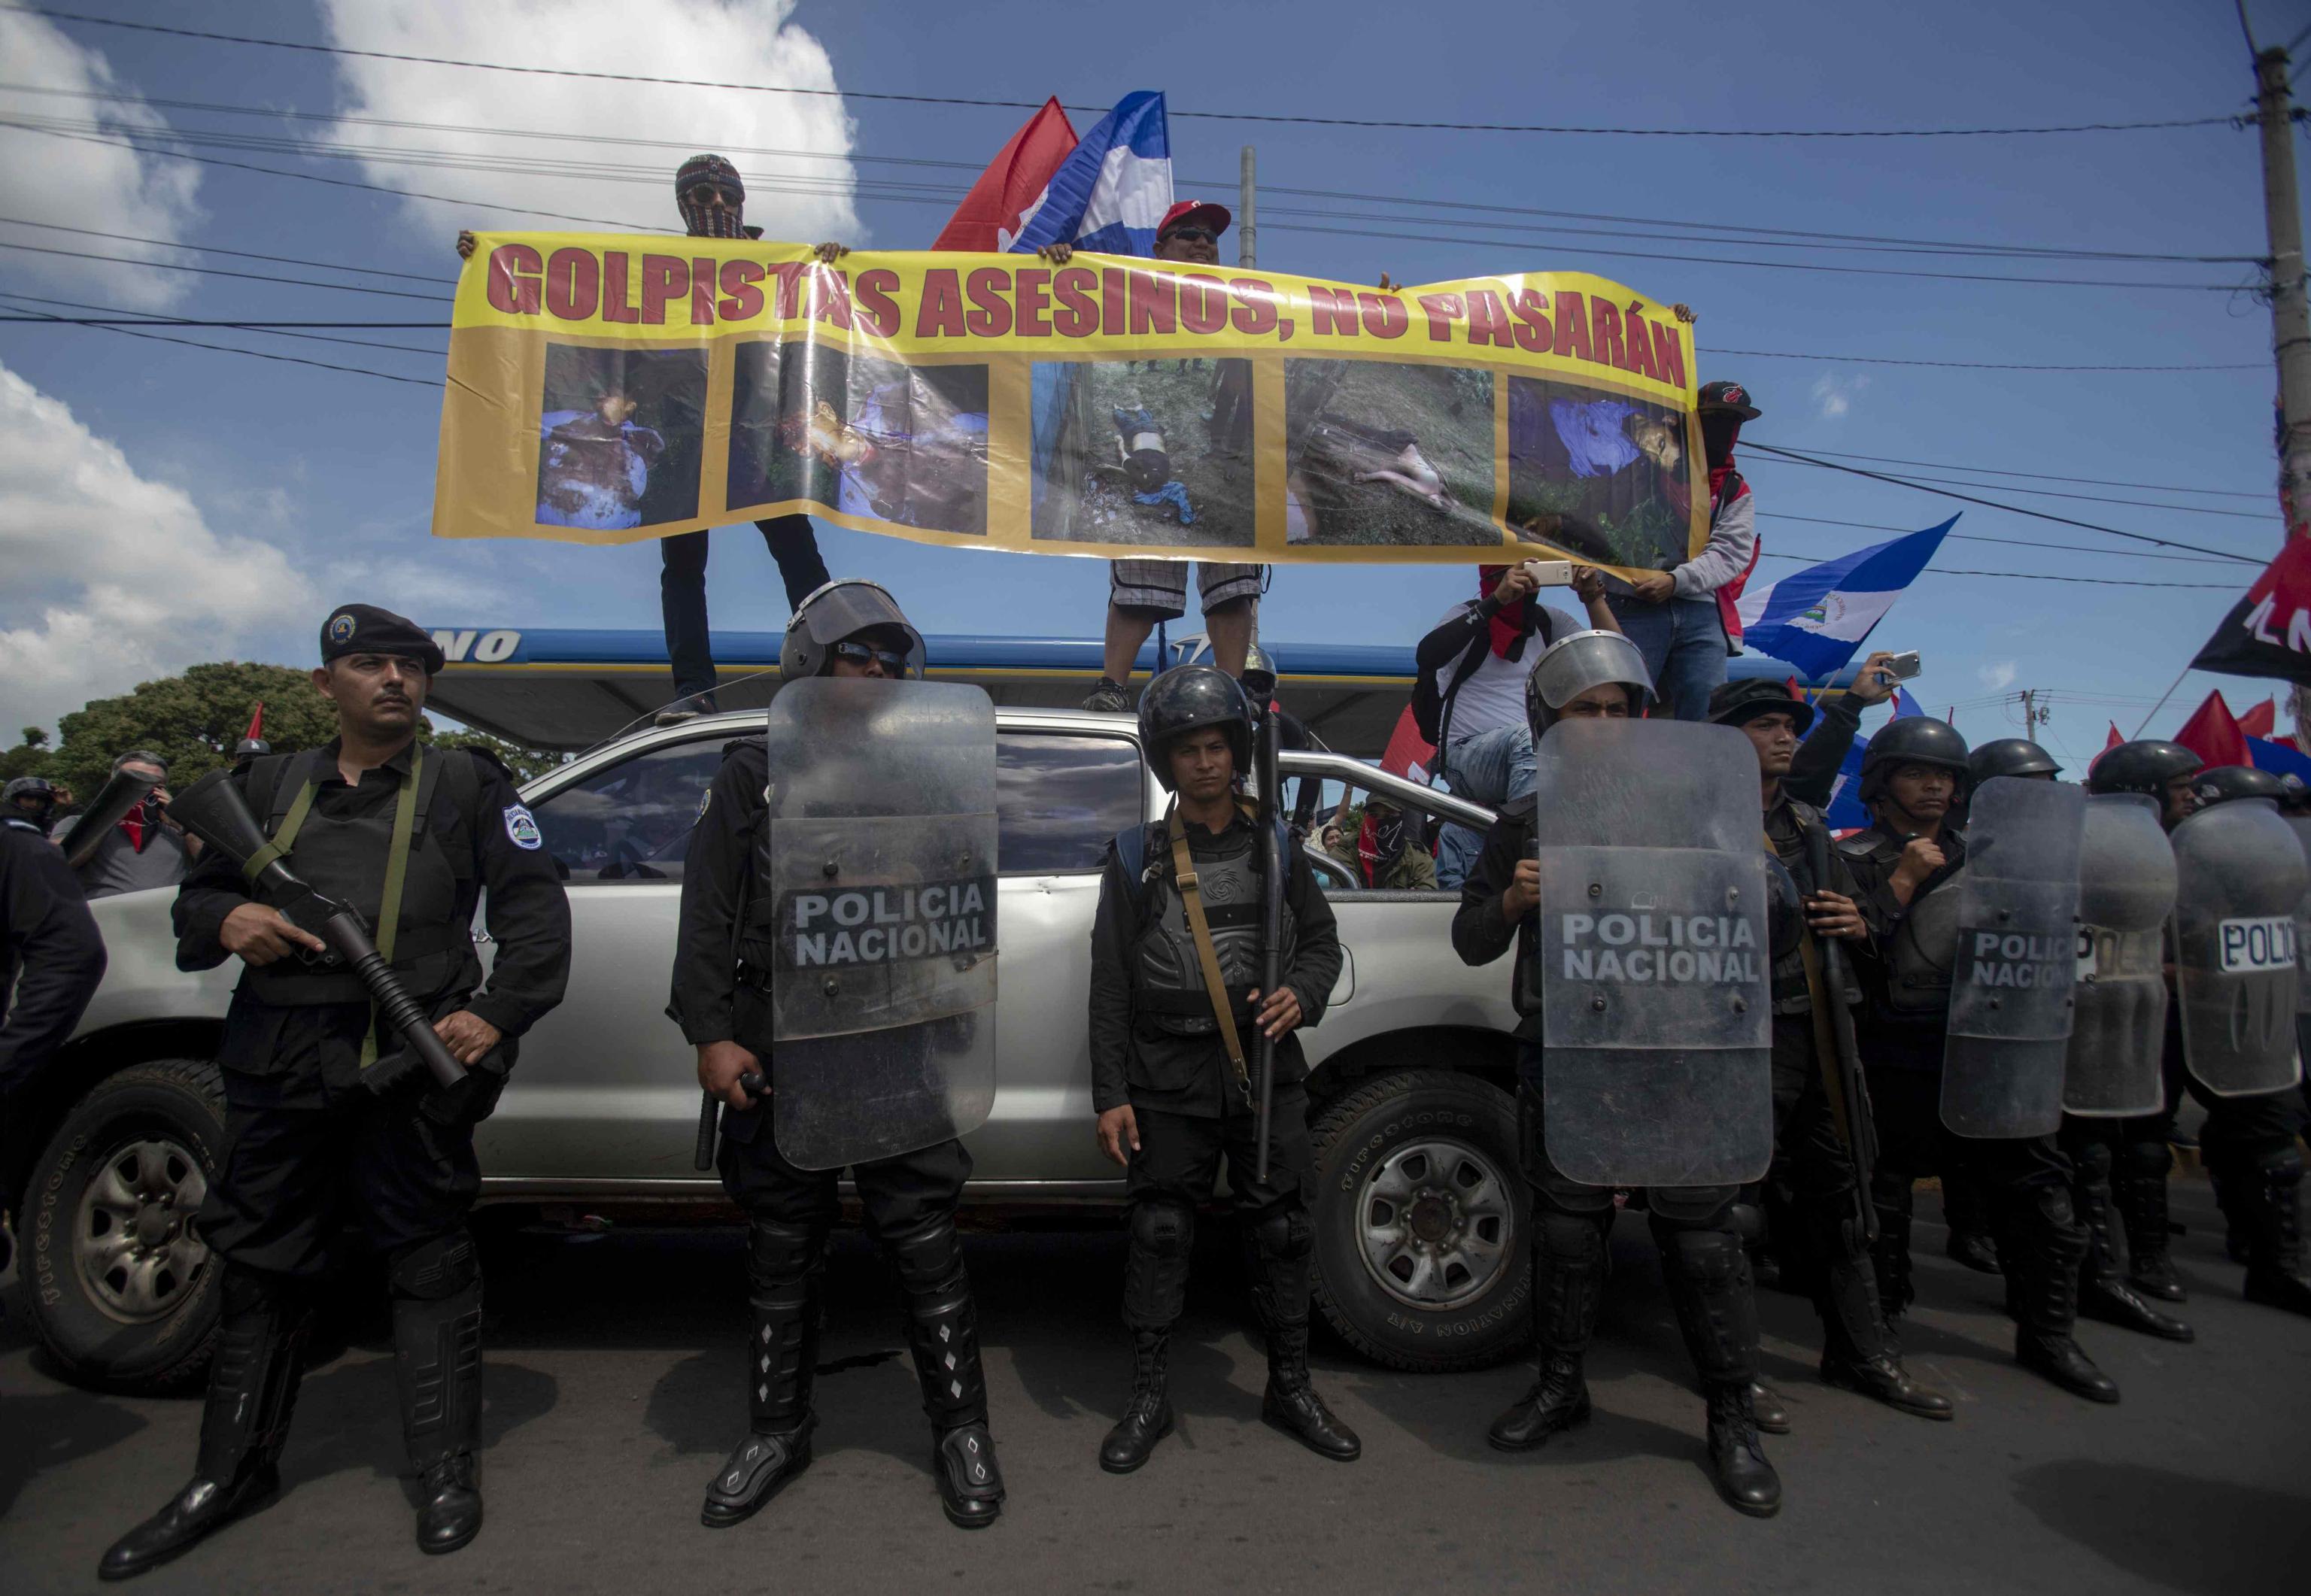 Non solo proteste, ma anche sostegno al governo. Ieri si è riunito anche chi appoggia Ortega